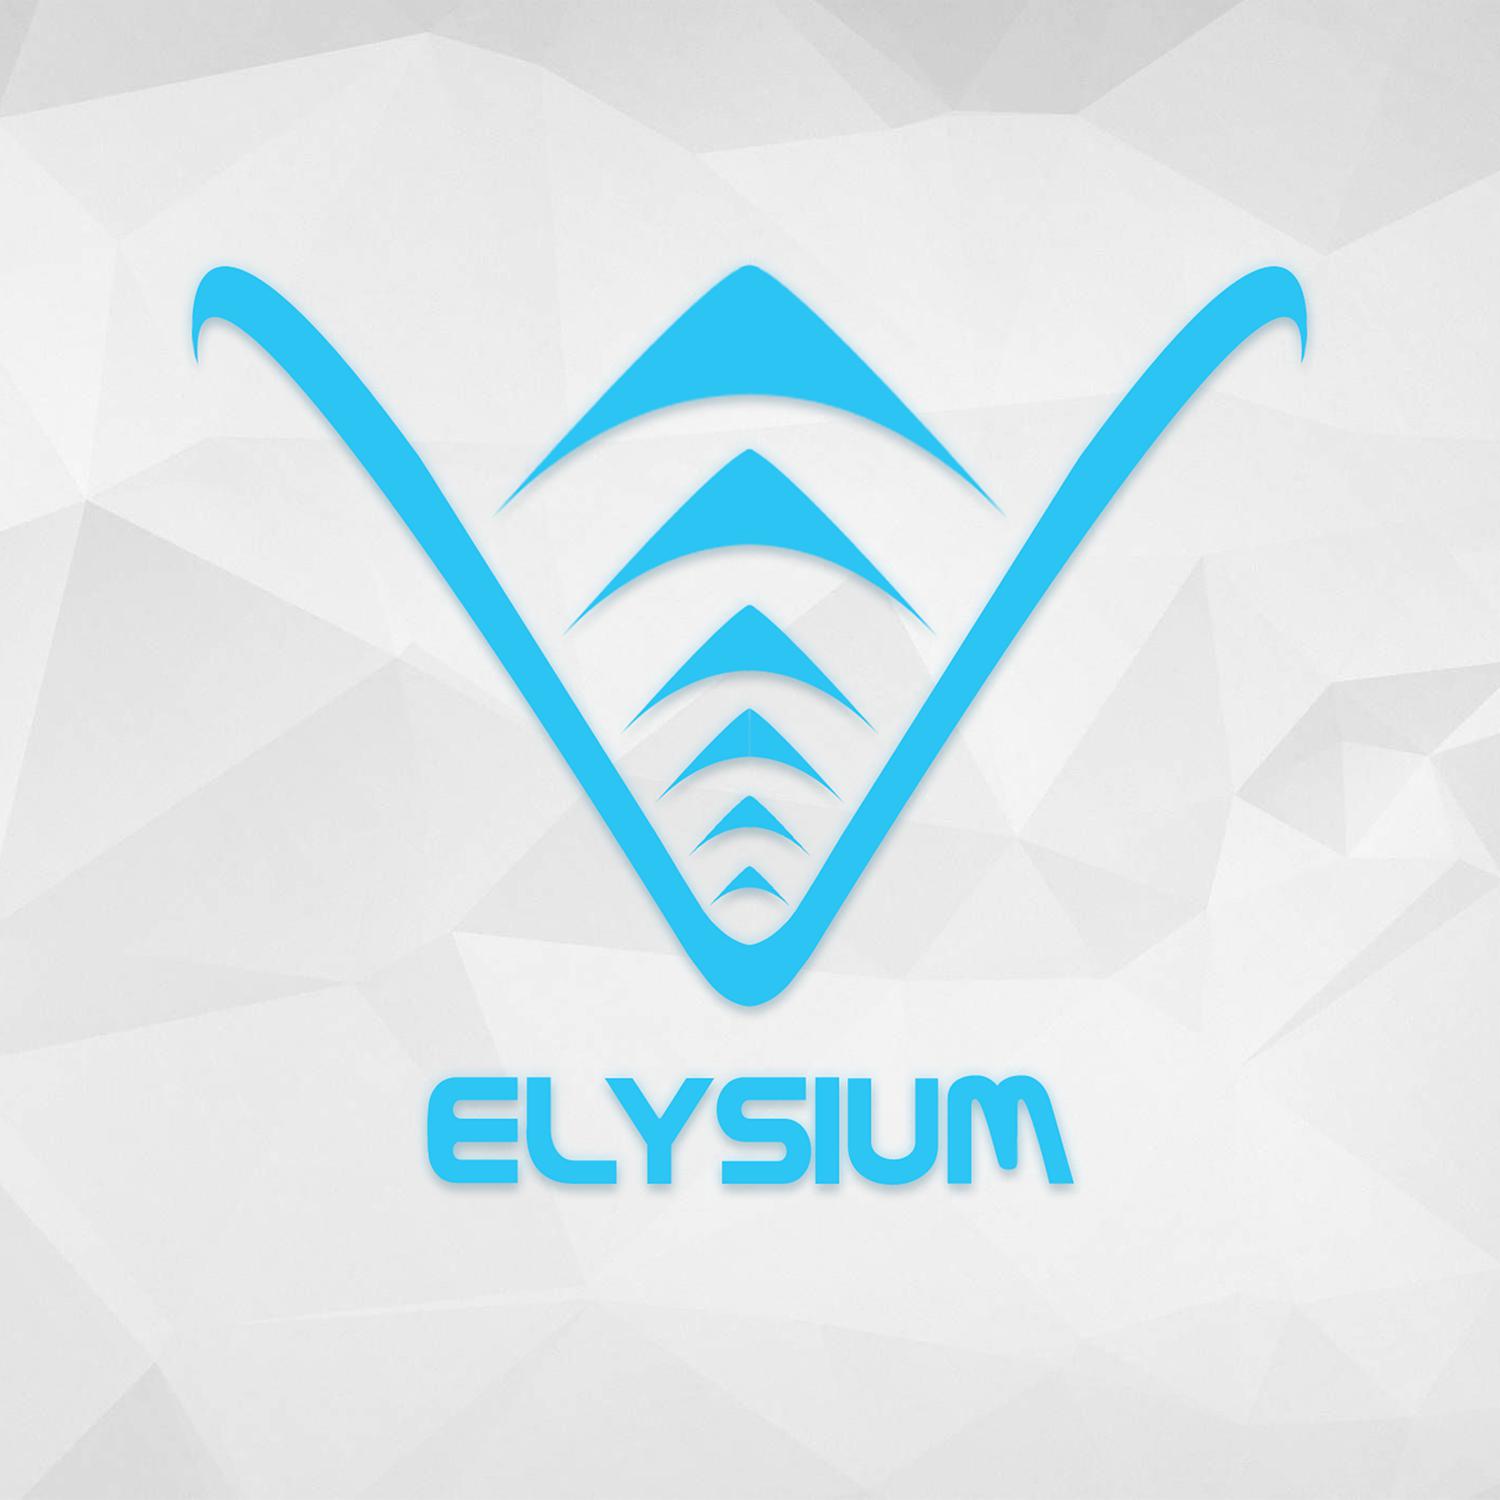 Epsylon - Welcome to Elysium